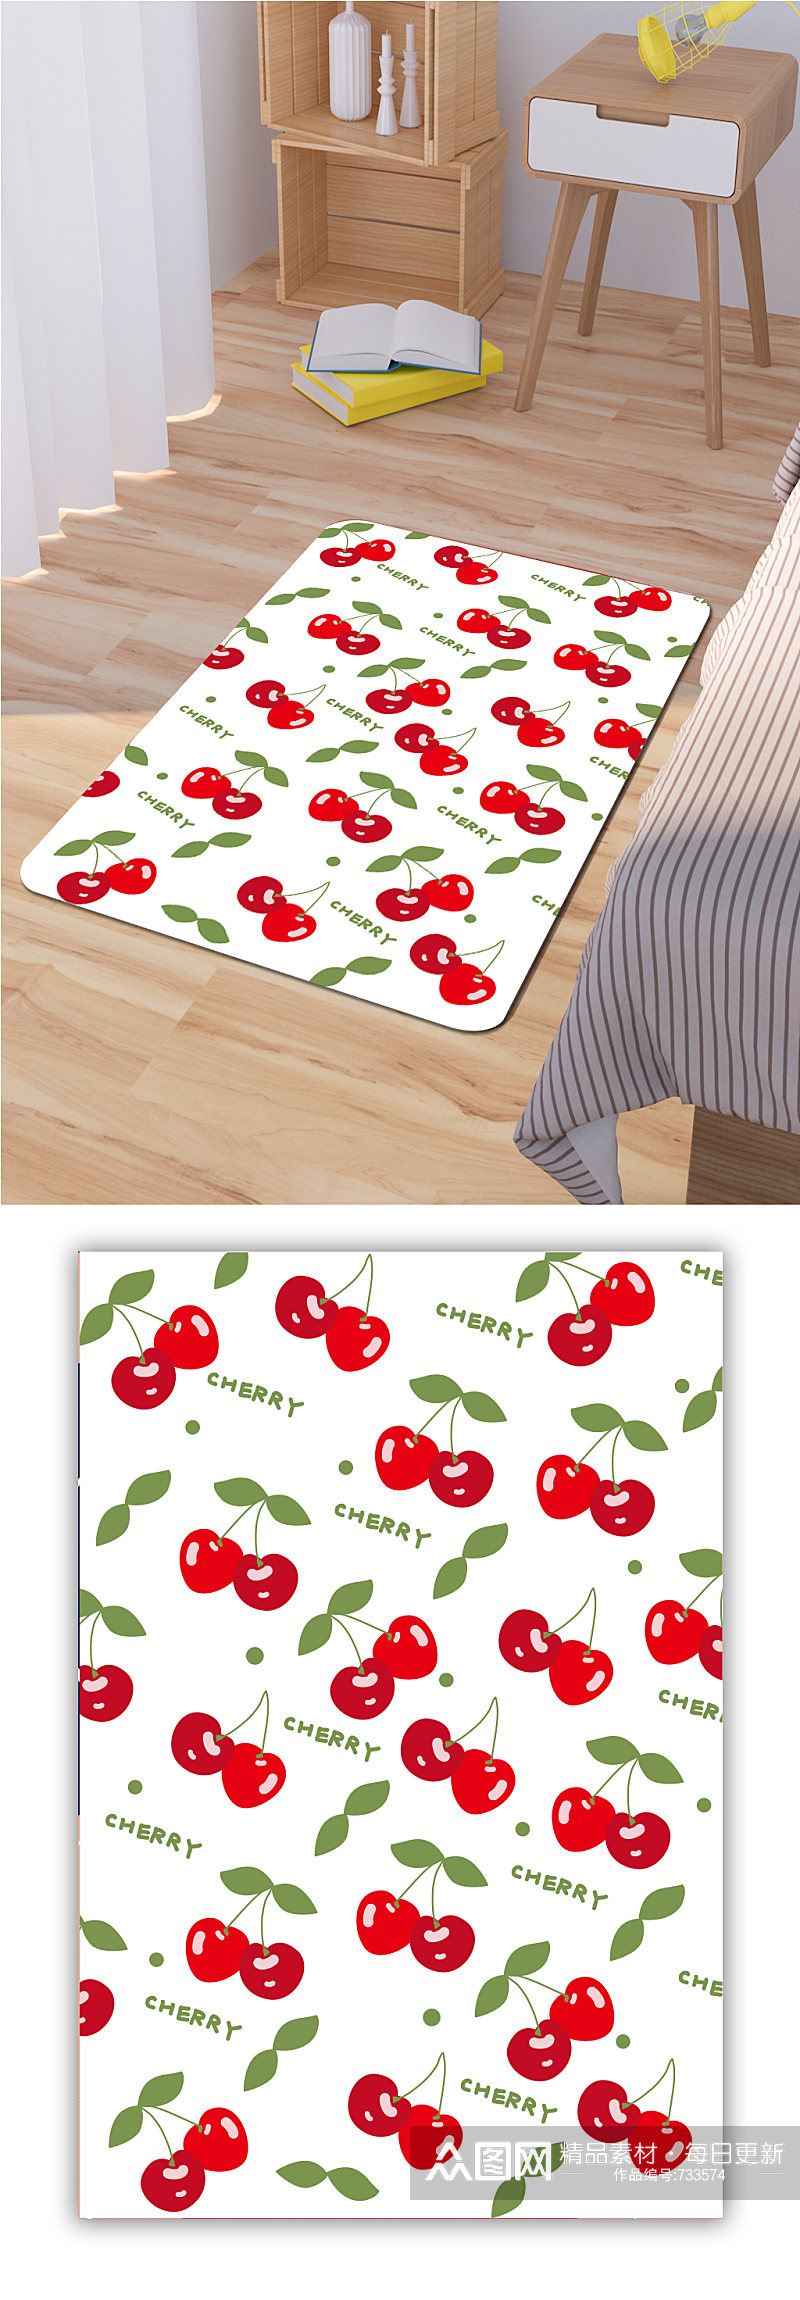 家装地毯樱桃水果图案素材